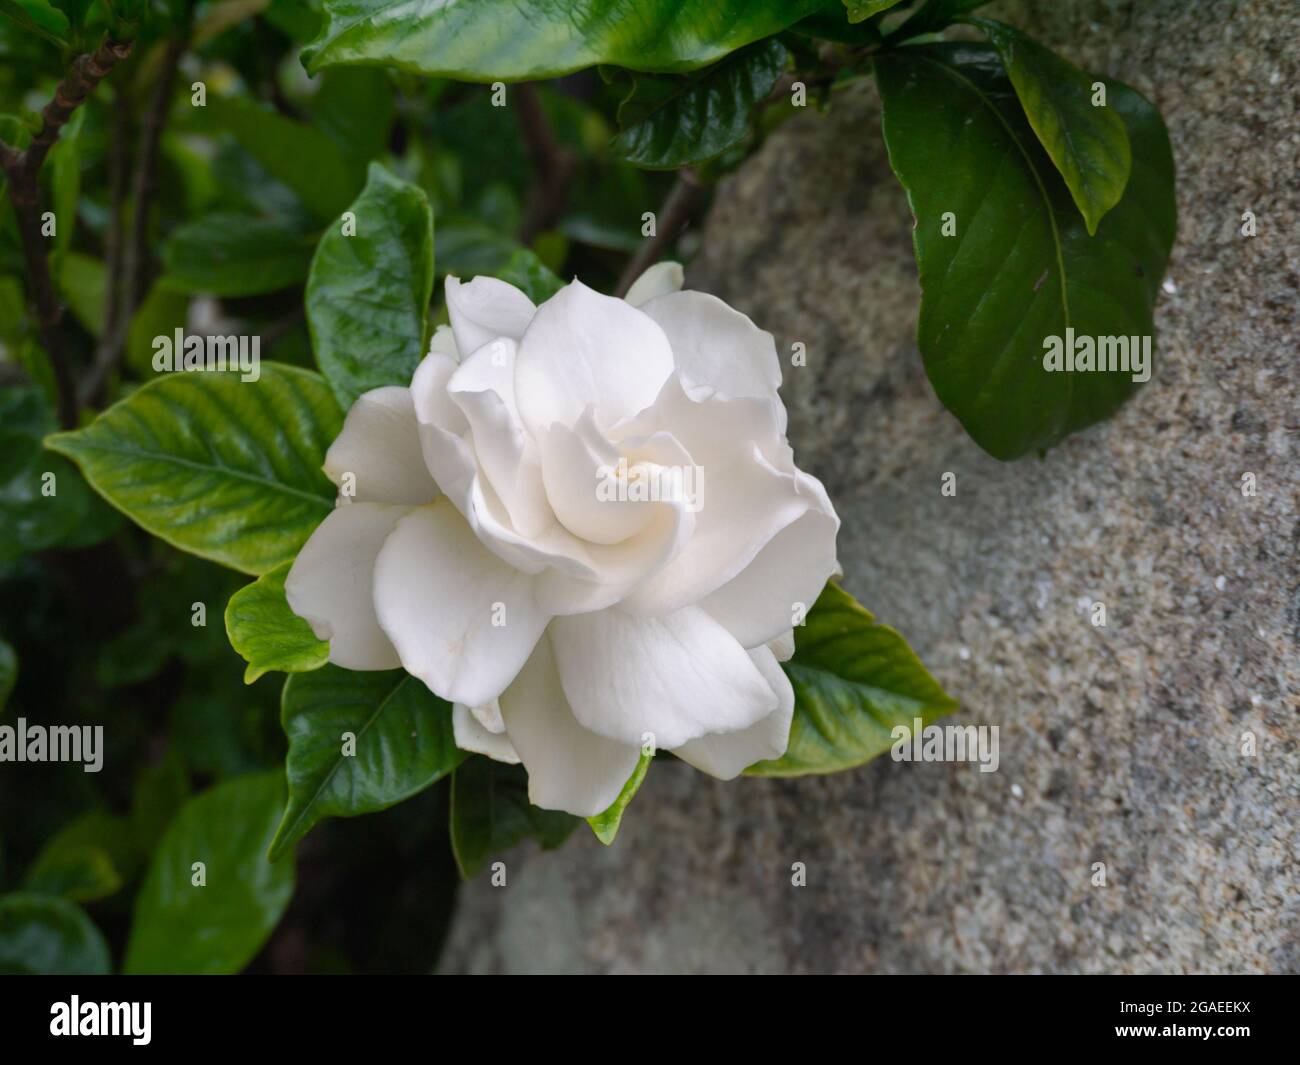 gardenia jasminoides blühende pflanze im garten weiße duftende